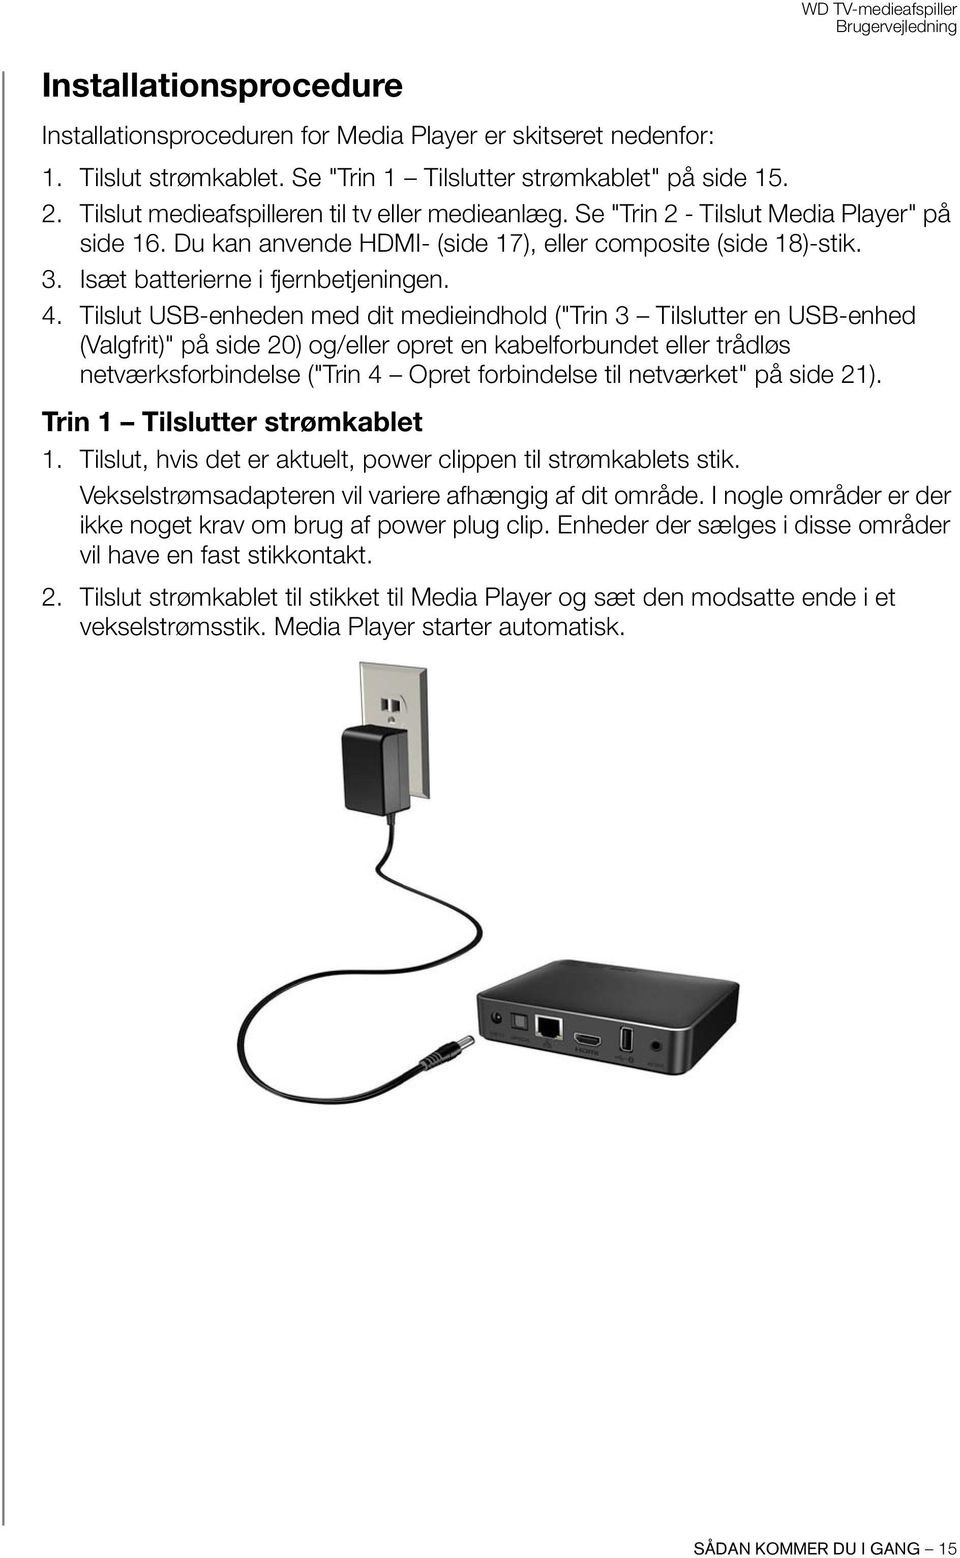 4. Tilslut USB-enheden med dit medieindhold ("Trin 3 Tilslutter en USB-enhed (Valgfrit)" på side 20) og/eller opret en kabelforbundet eller trådløs netværksforbindelse ("Trin 4 Opret forbindelse til